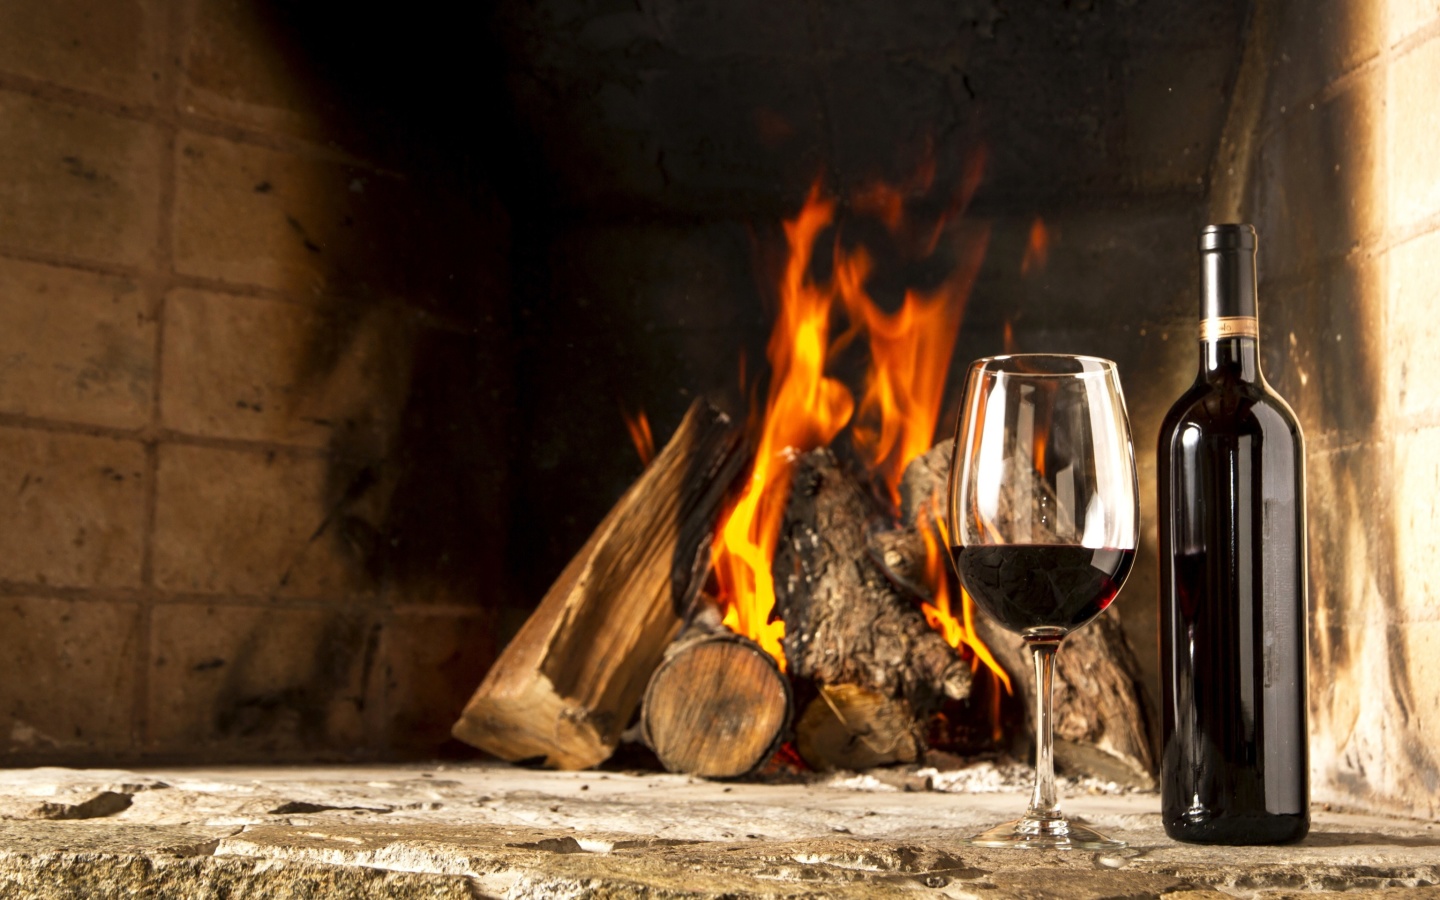 Обои Wine and fireplace 1440x900